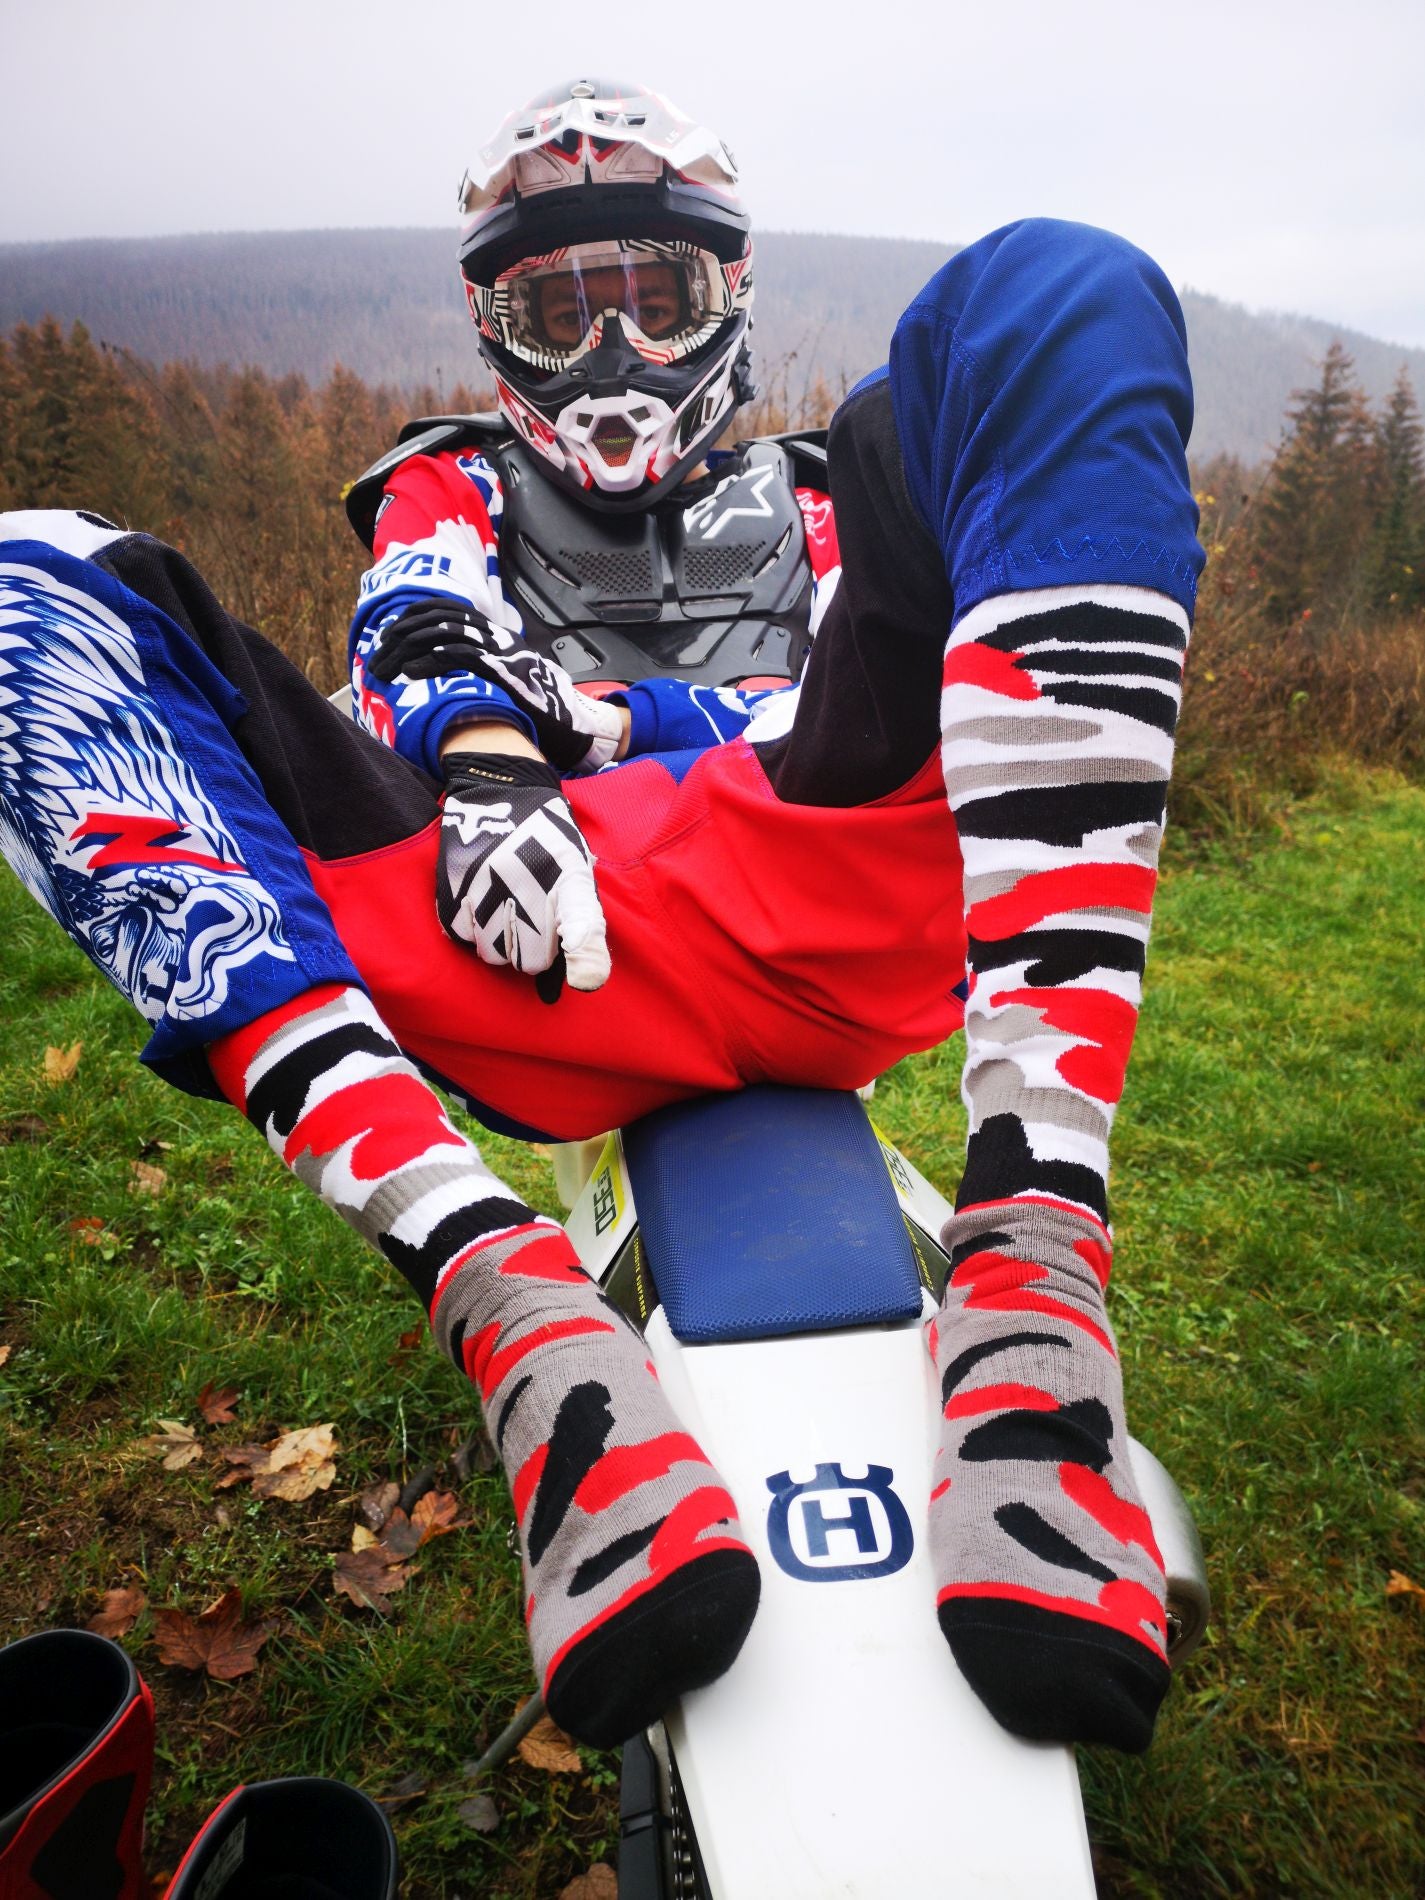 motor cross biker auf seinem motorrad mit helm und den mx socks von sk8erboy in schwarz roten flecktarn muster gegen lederflecken auf socken